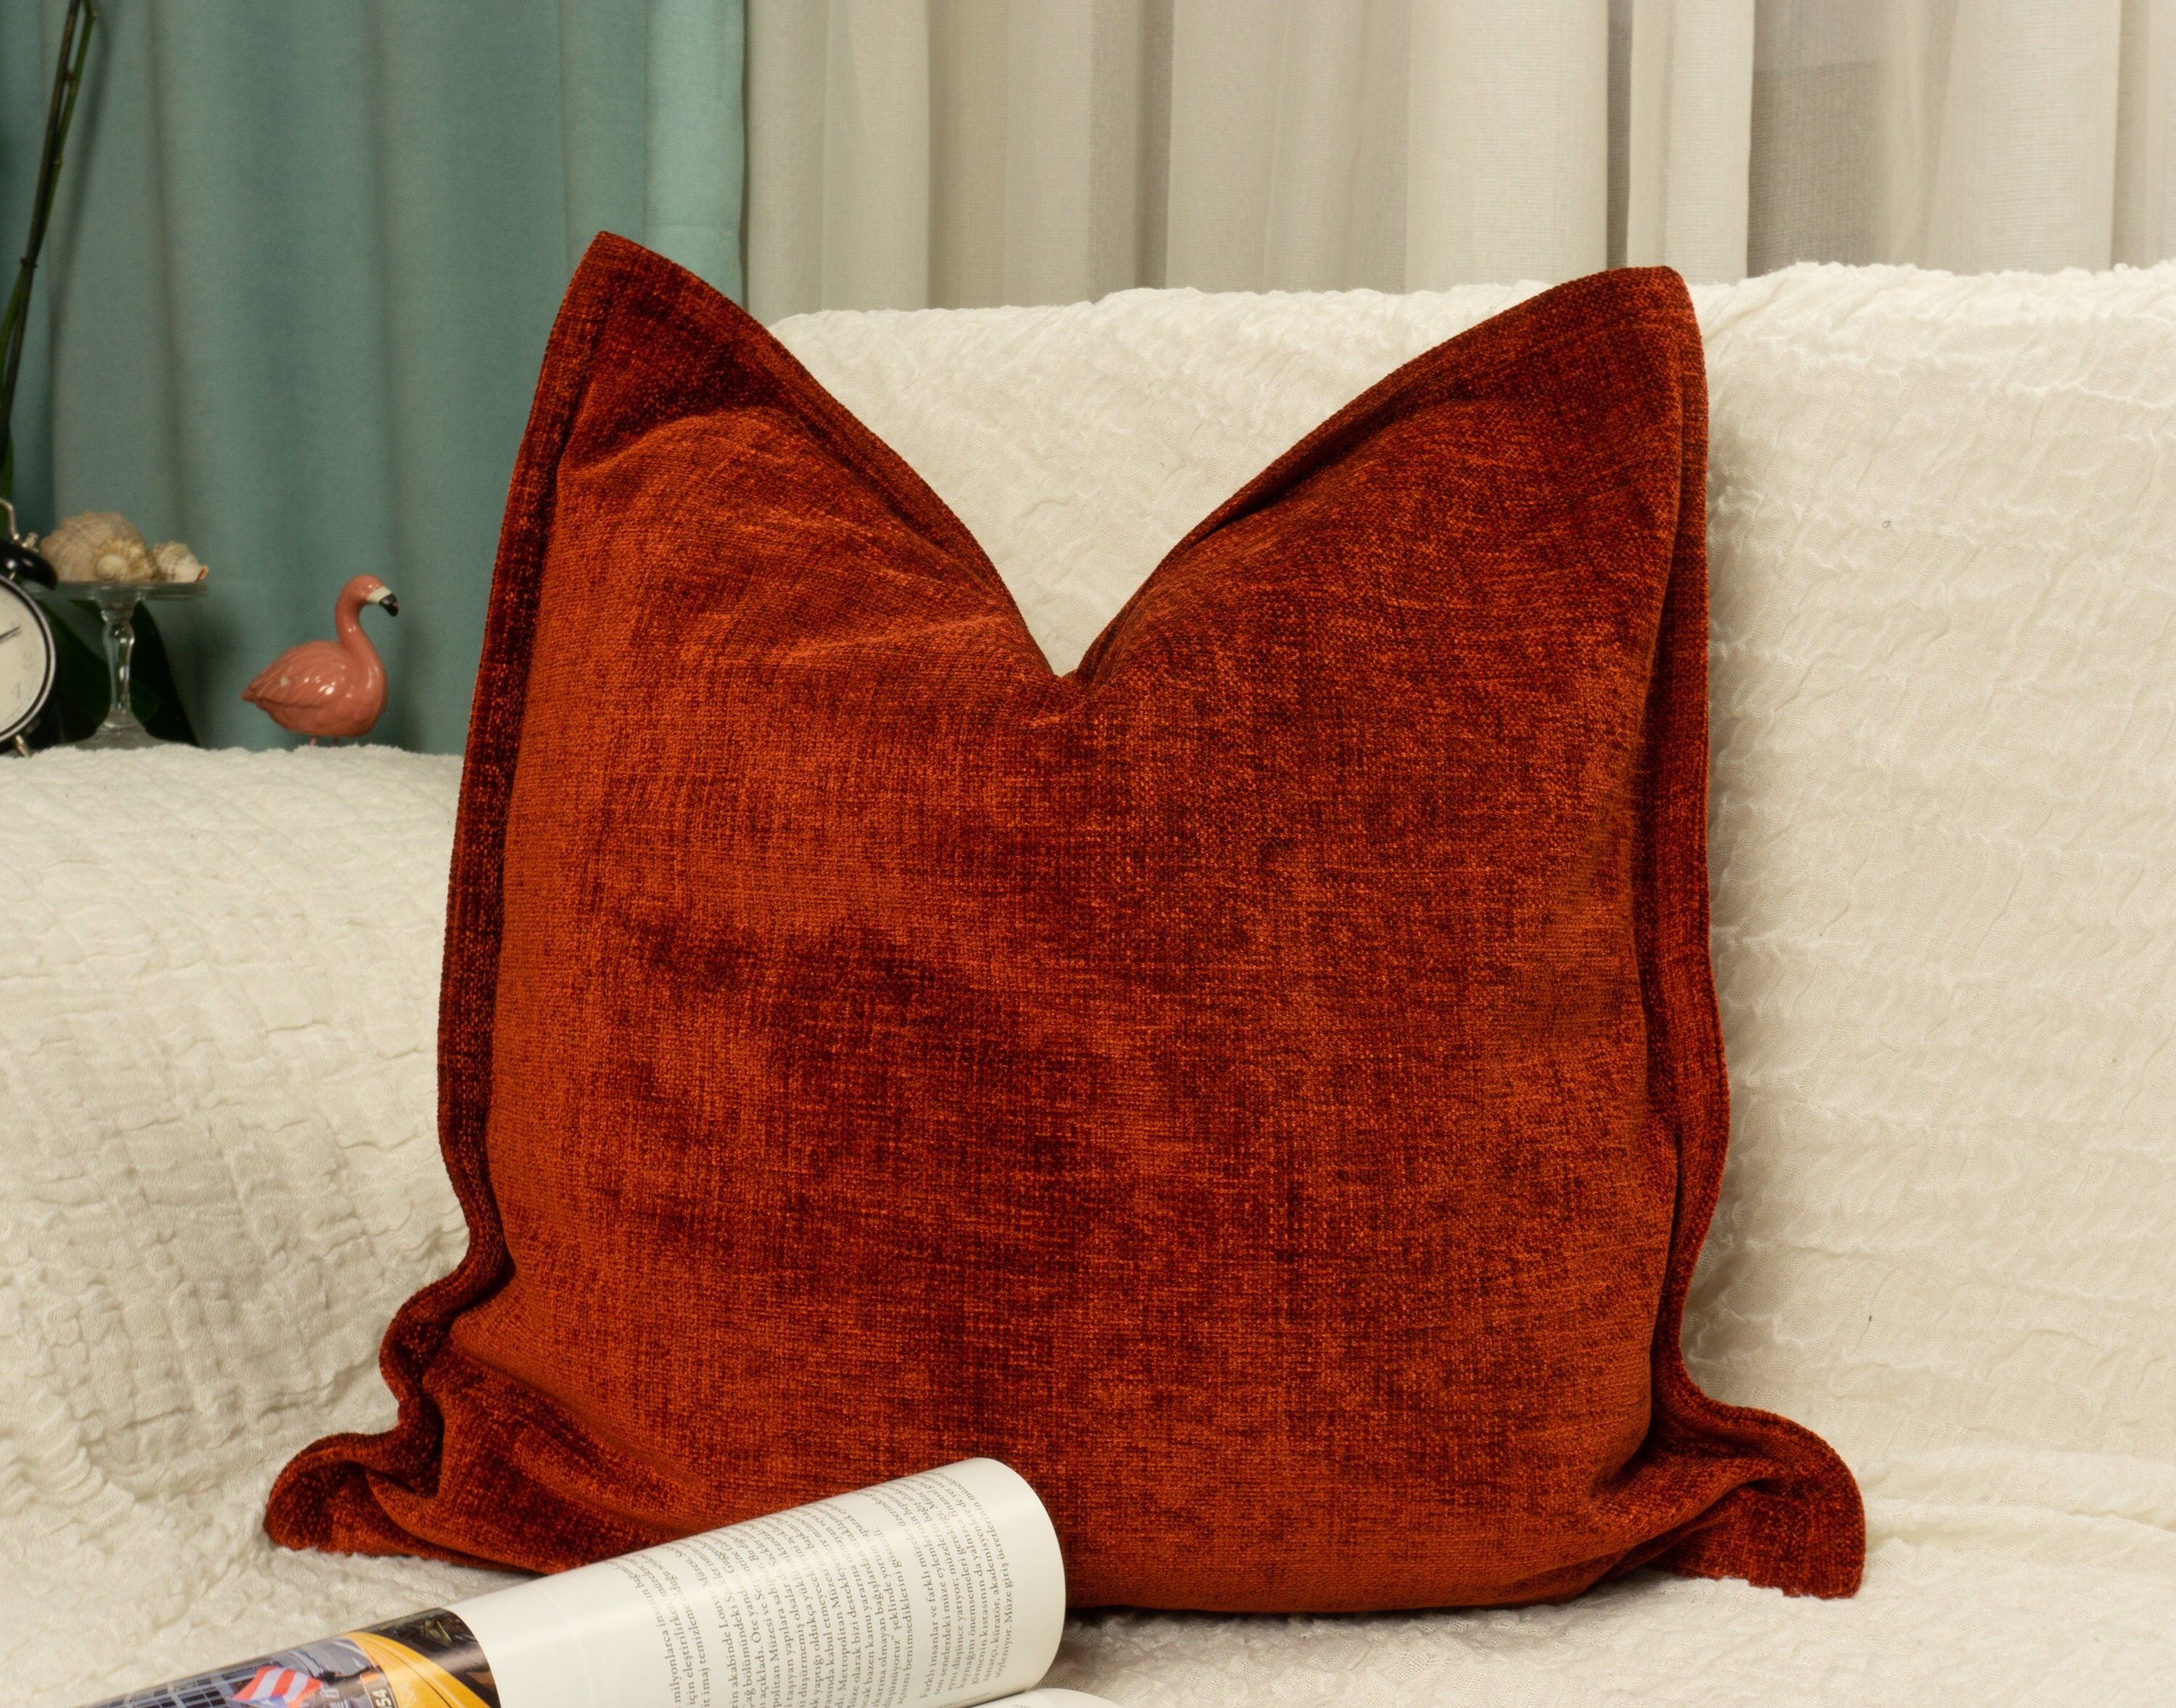 Terracotta pillow